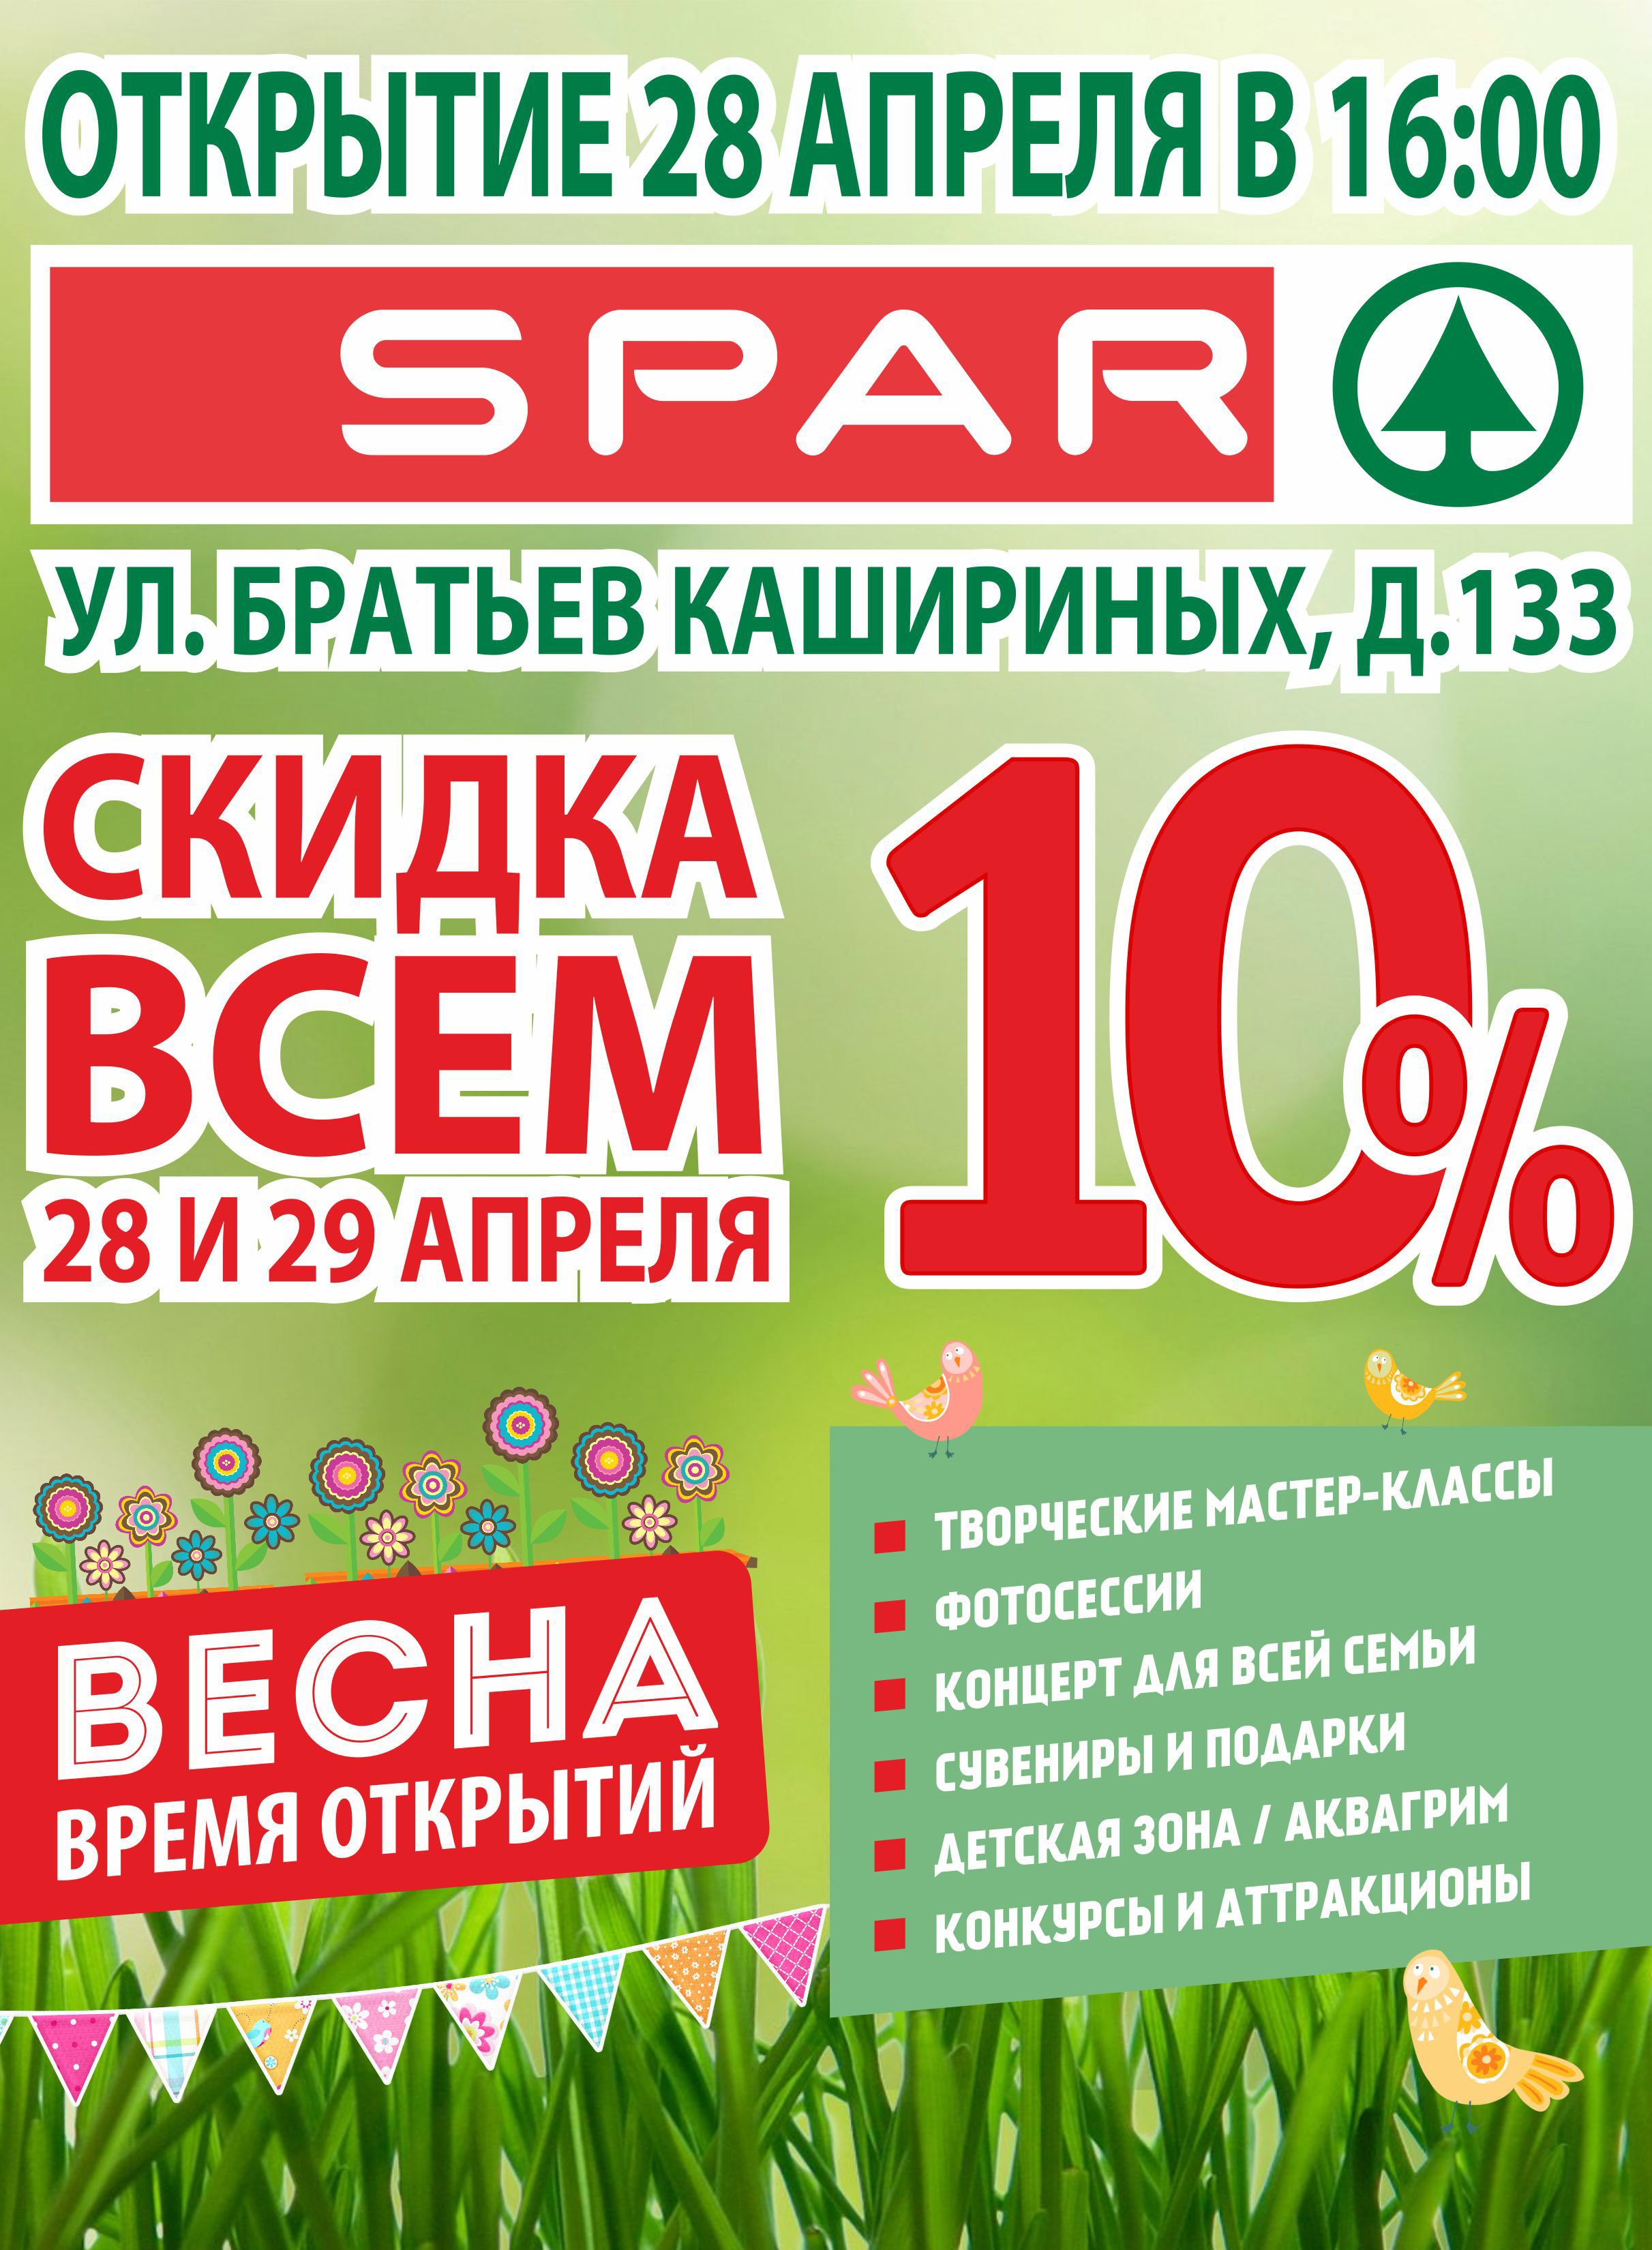 Открытие гипермаркета SPAR на Братьев Кашириных, 133!